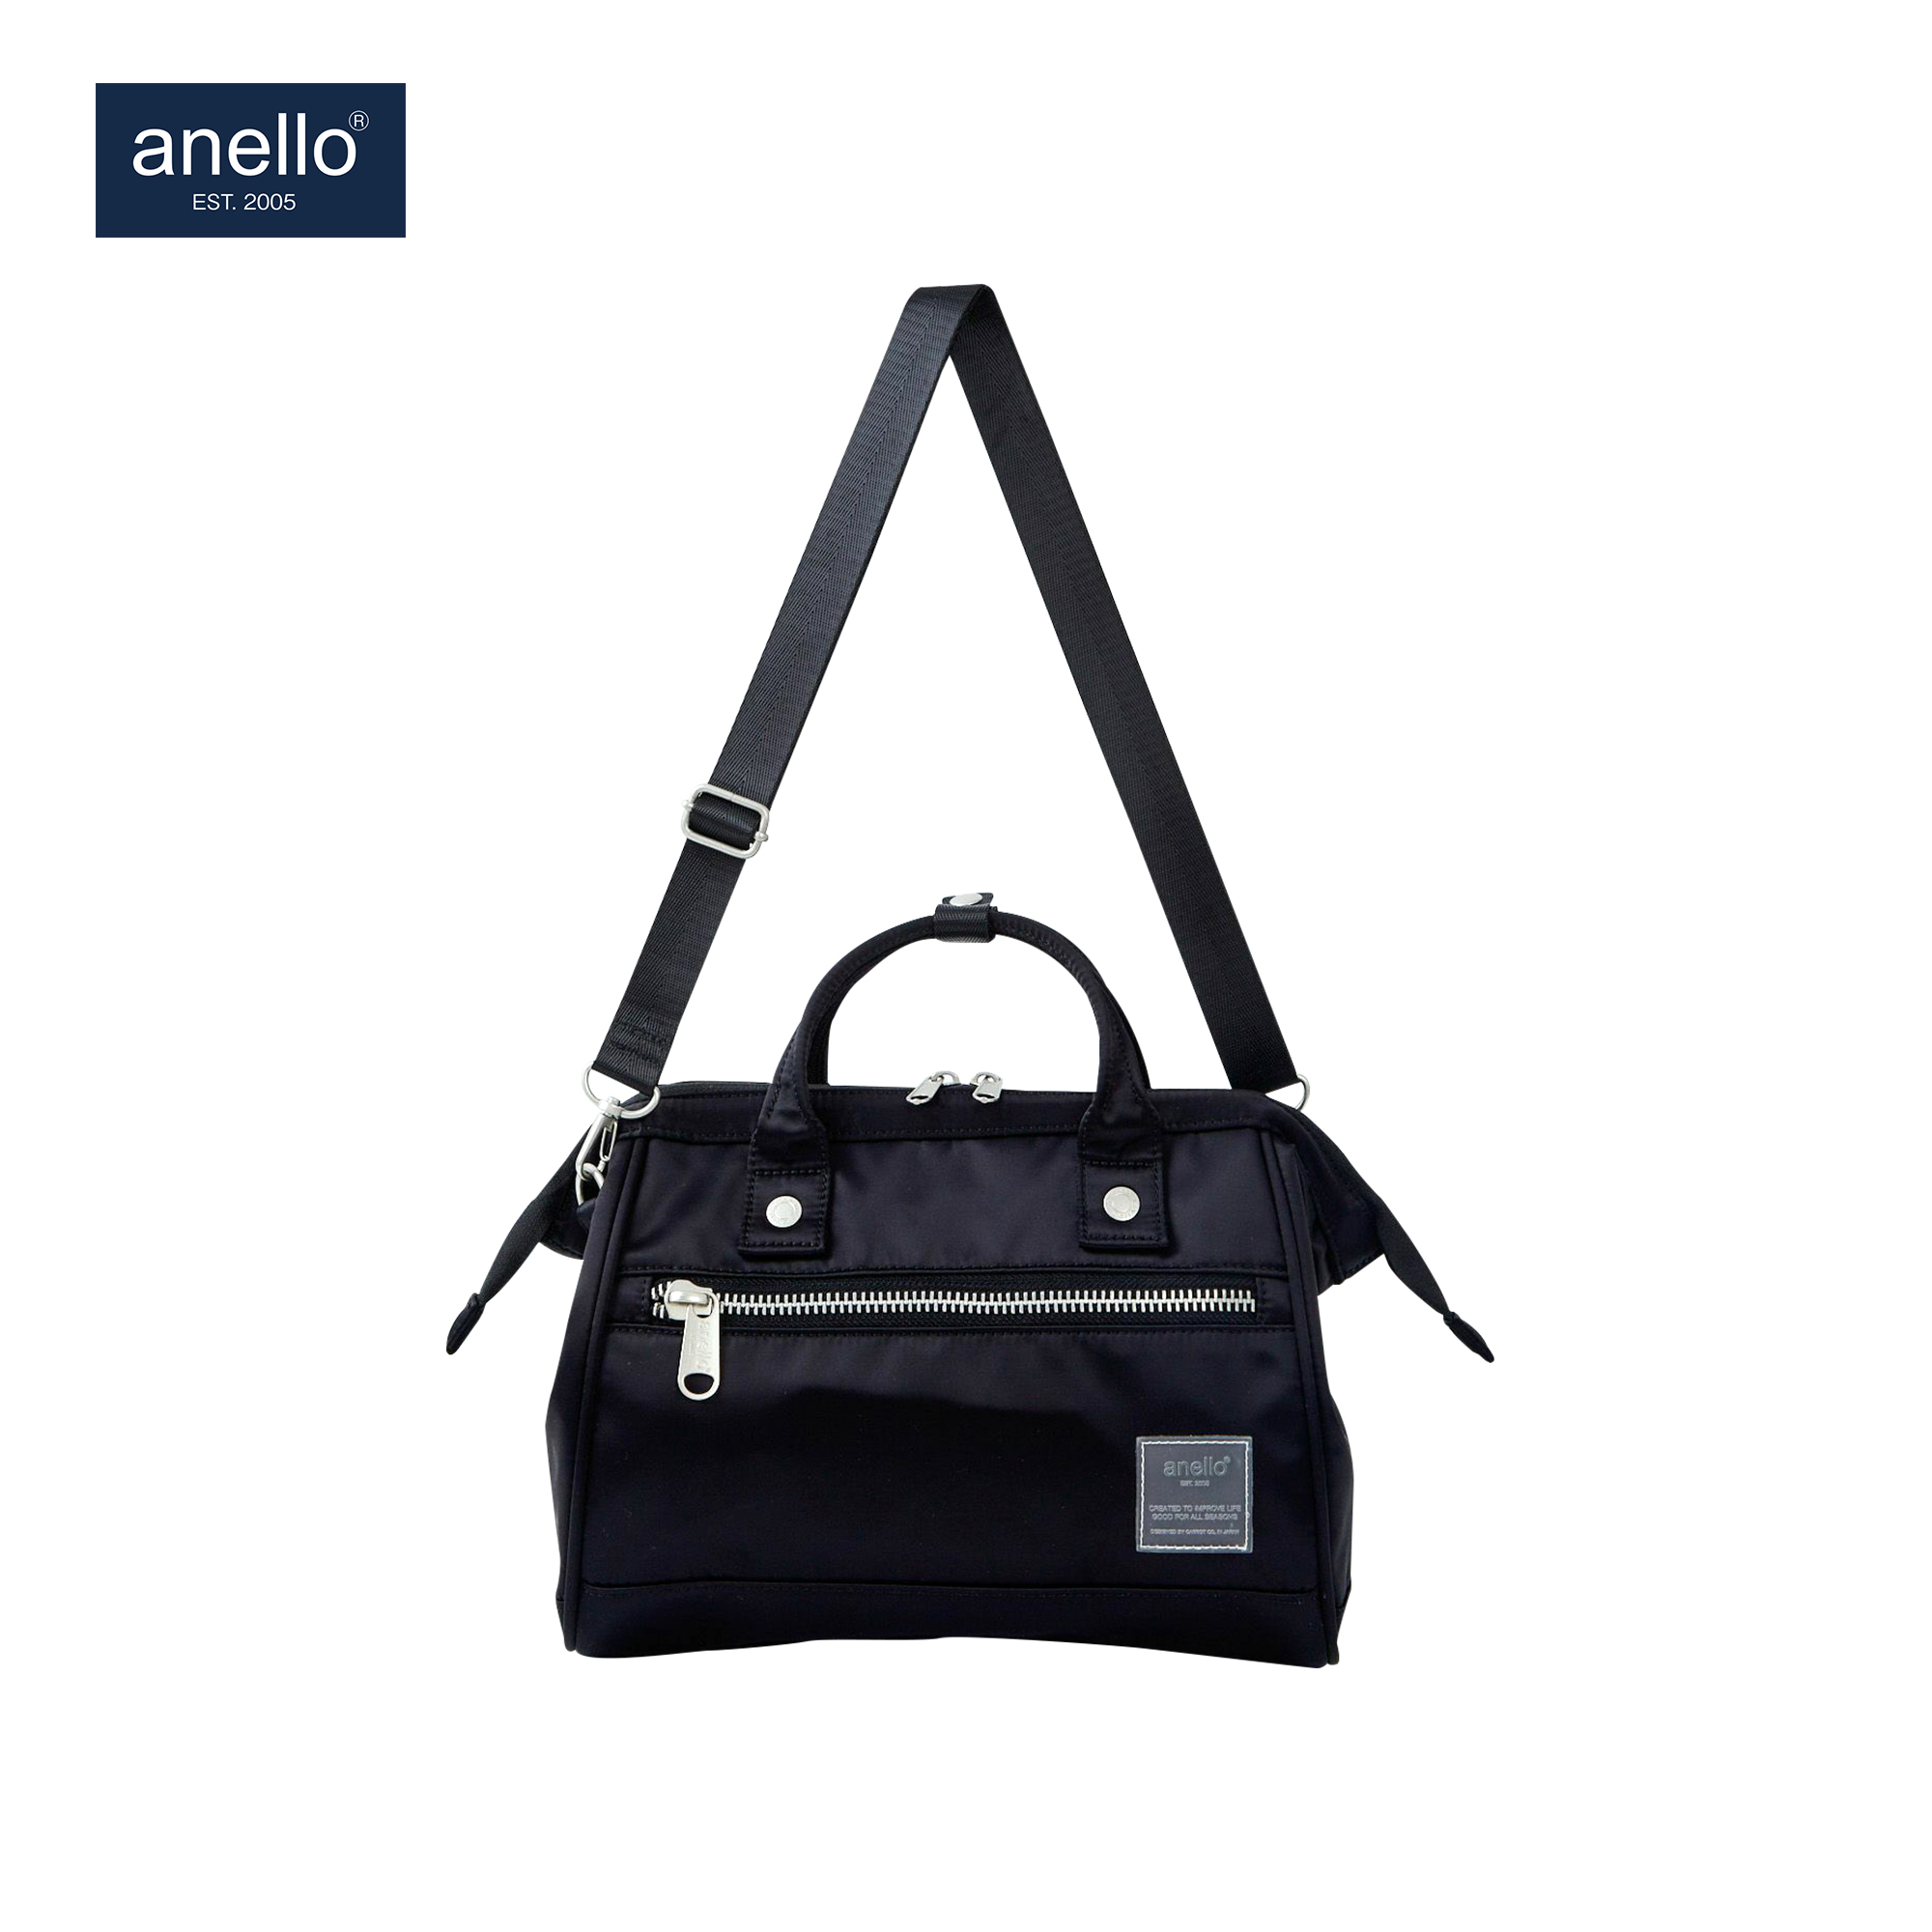 Qoo10 - ANELLO MINI SHOULDER BAG  ATELIER (AT-C3167) : Bag & Wallet